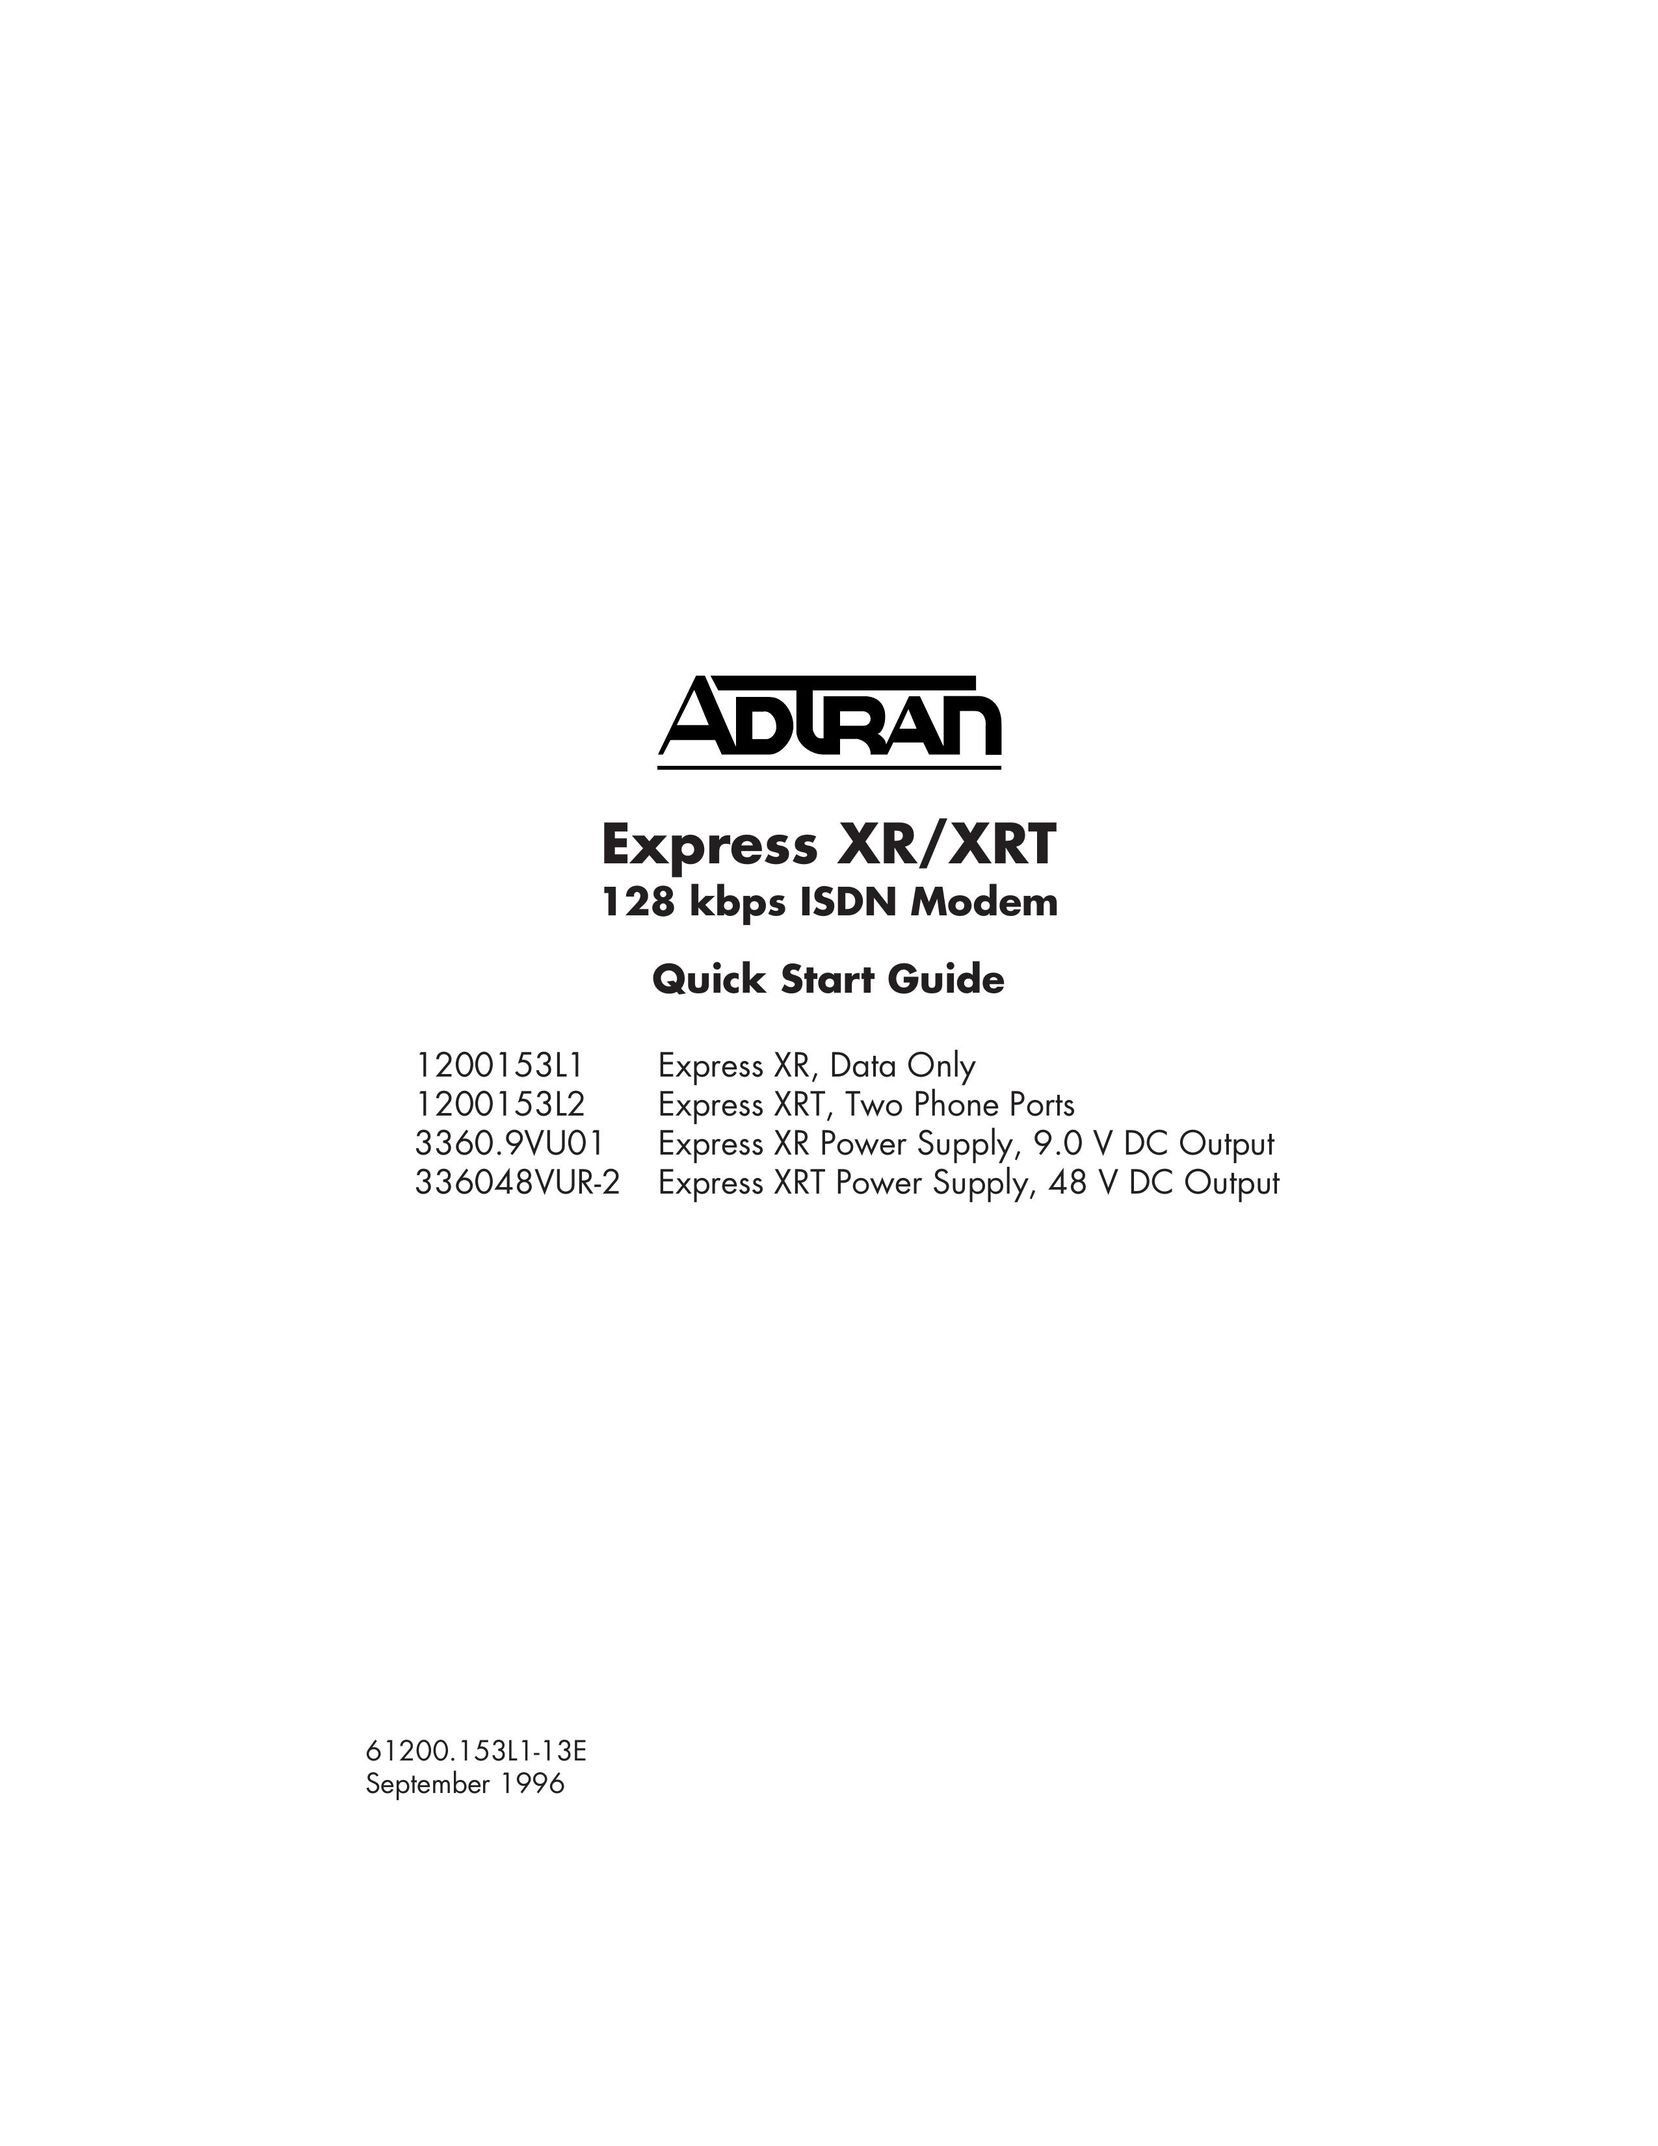 ADTRAN 1200153L1 Modem User Manual